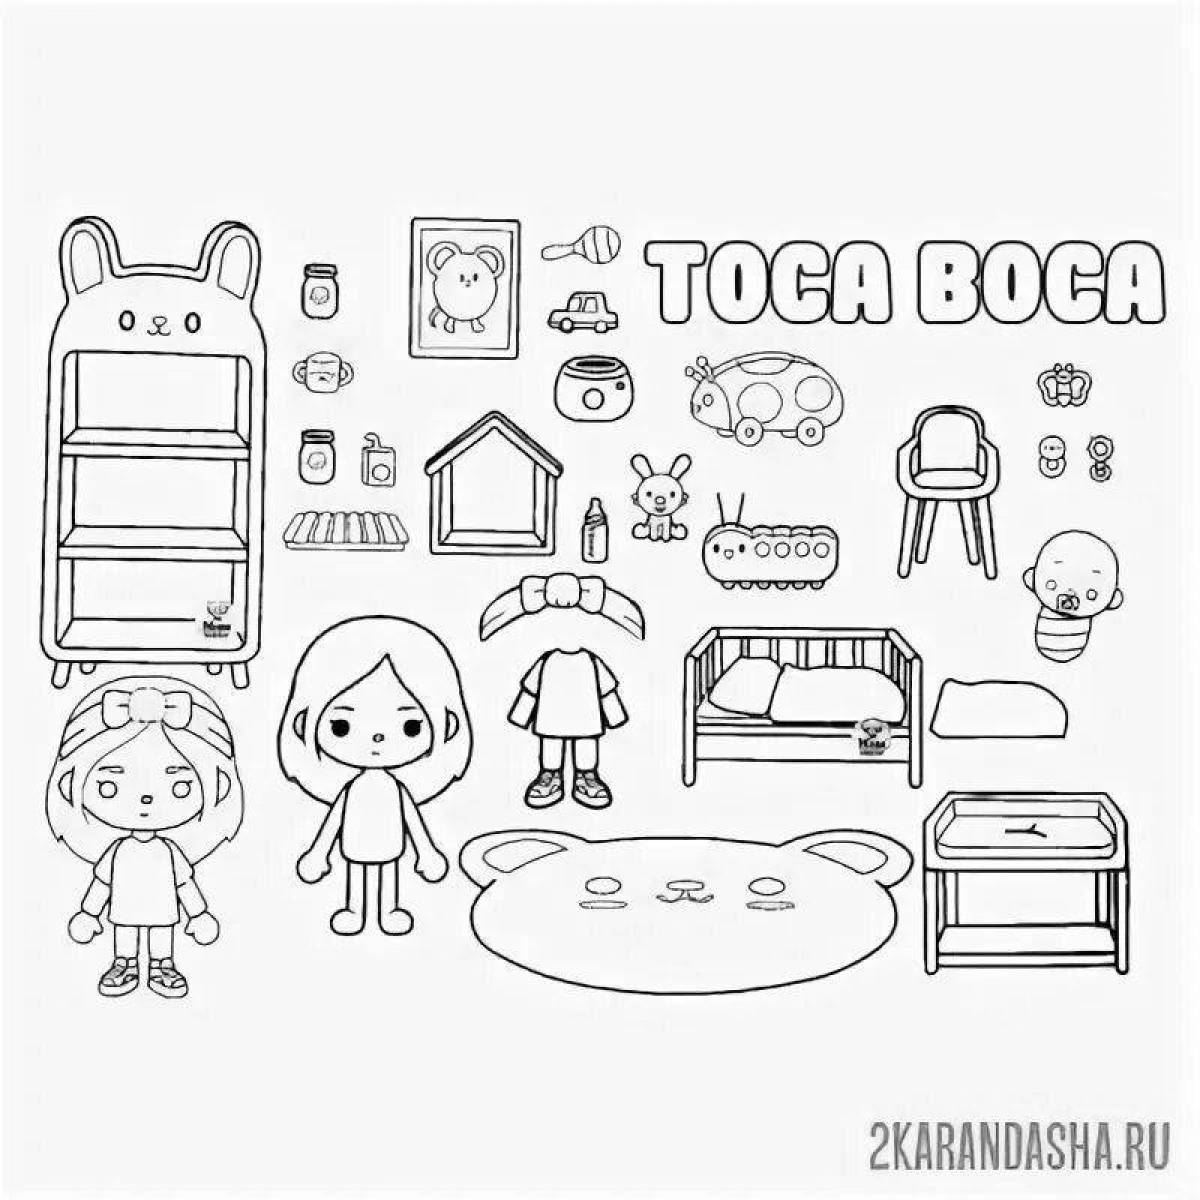 Энергичная мебель toka boca